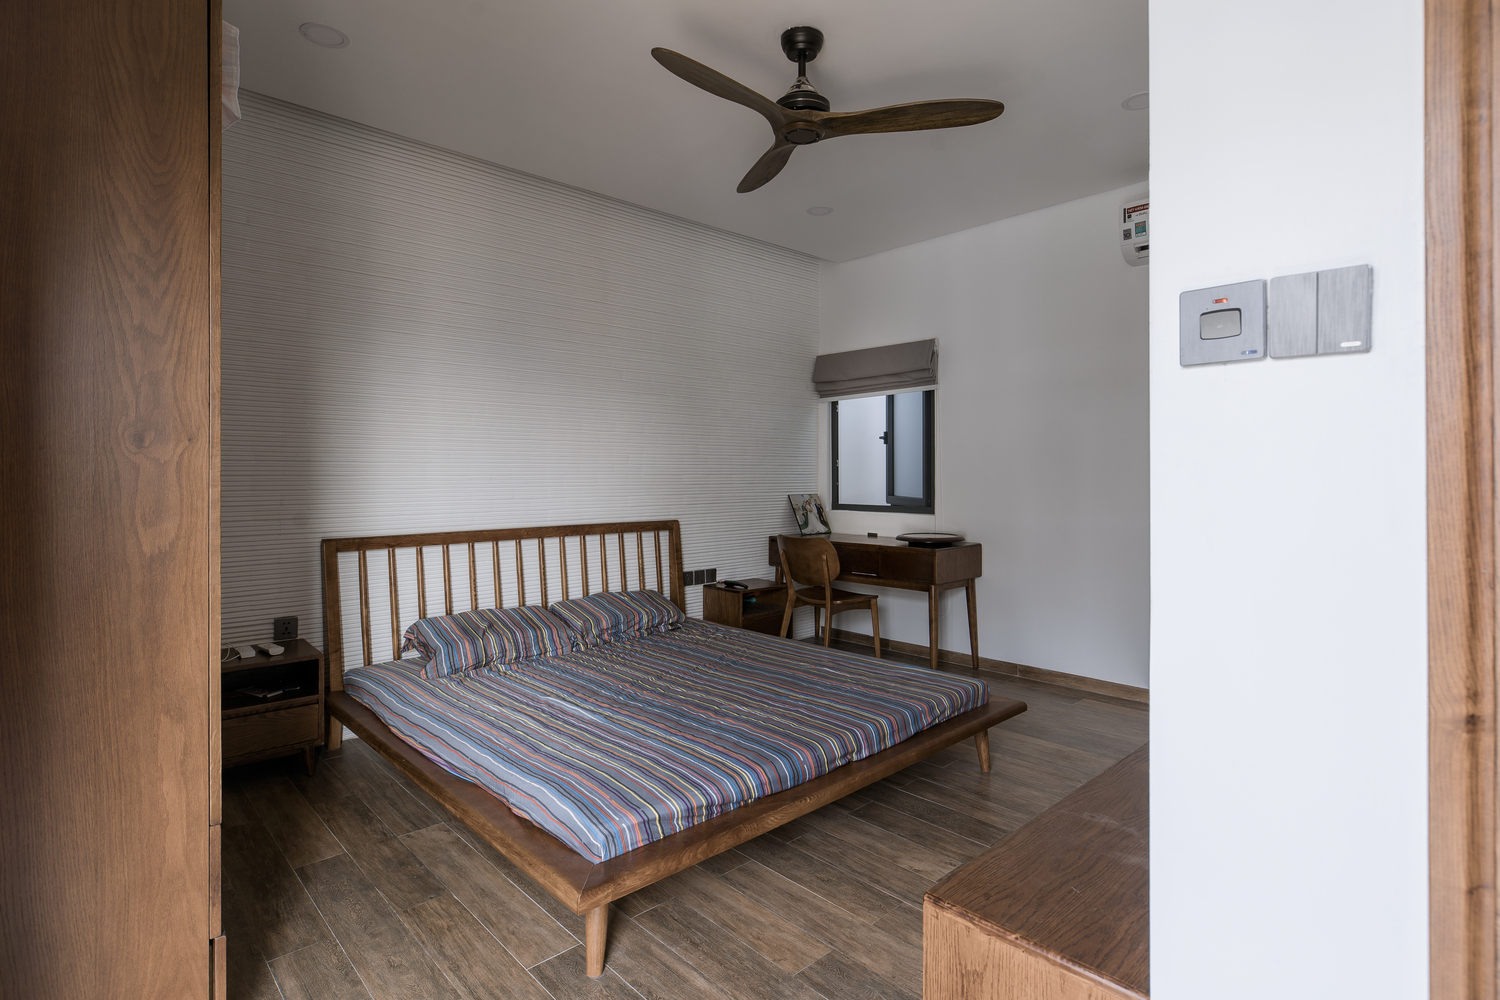 Phòng ngủ thiết kế tối giản, đậm chất truyền thống với nội thất gỗ thấp sàn tông màu ấm áp.